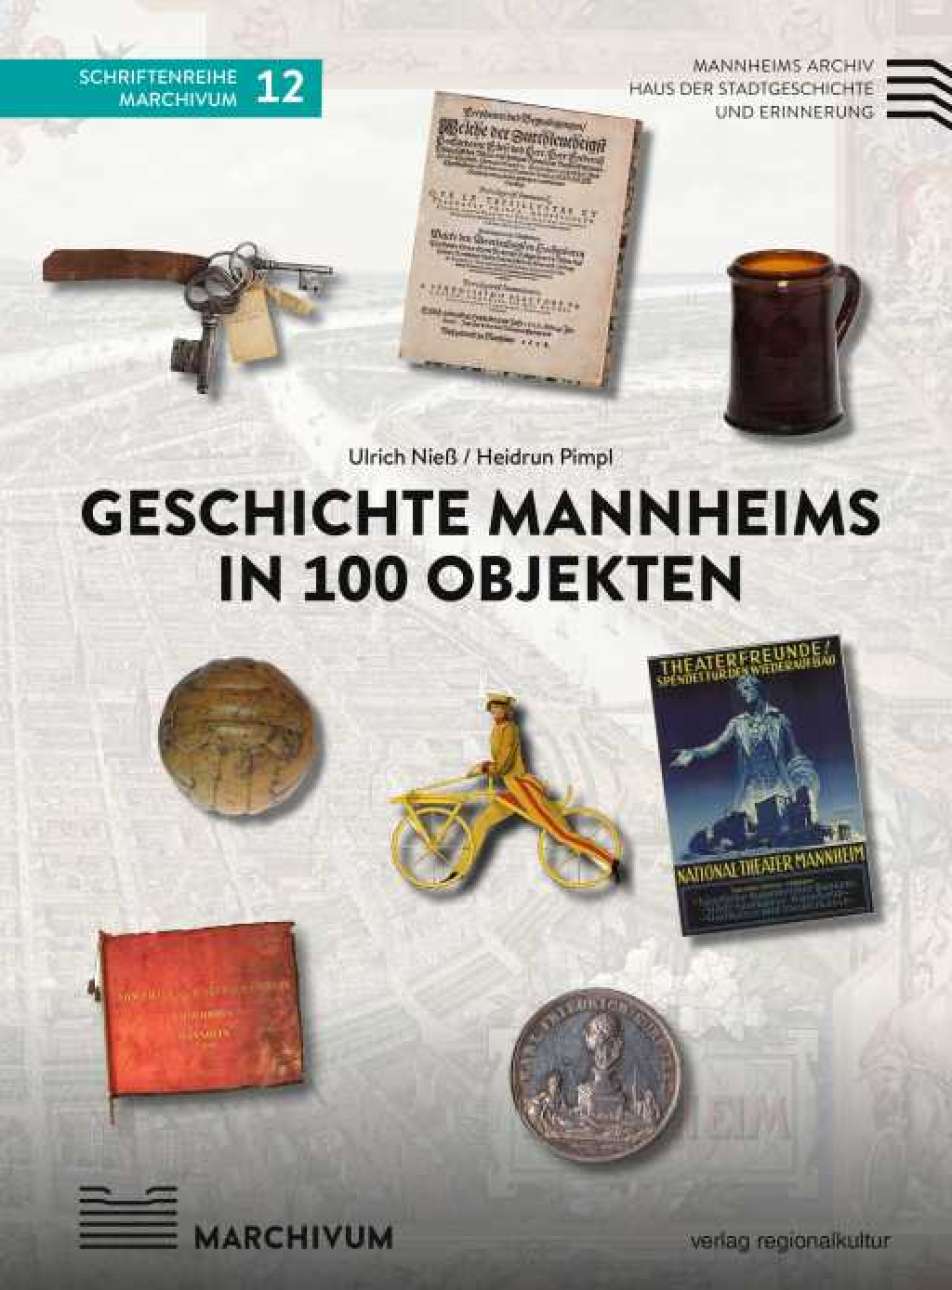 Cover des Buches "Geschichte Mannheims in 100 Objekten", das unterschiedliche Gegenstände wie eine historische Münze, einen Schlüsselbund oder einen Fußball zeigt